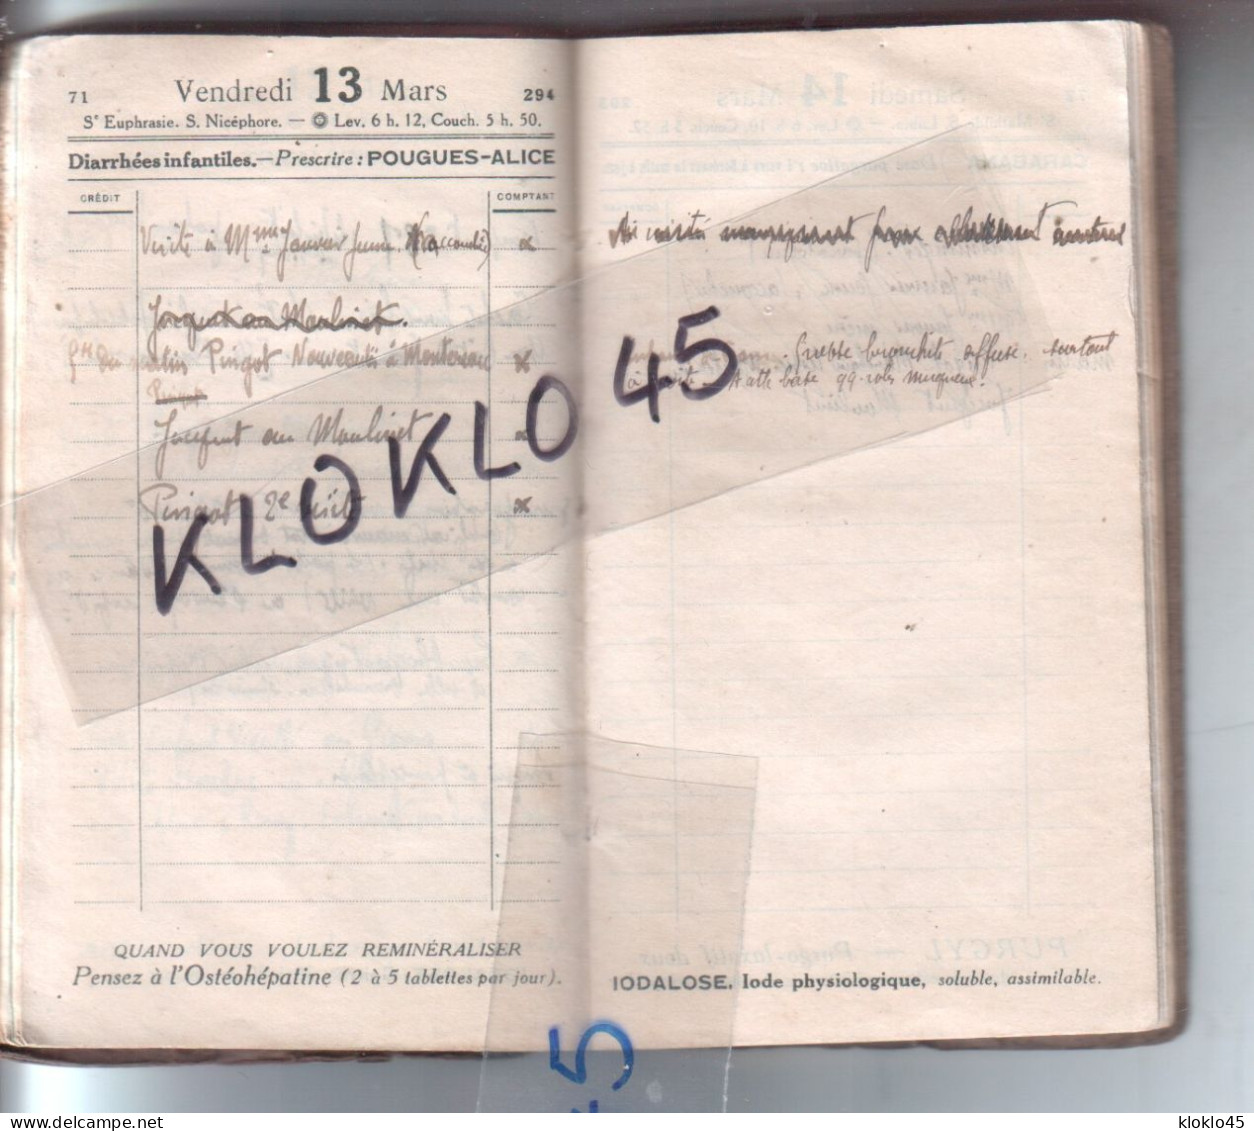 Agenda Calendrier de Docteur du Loiret MARS 1914 carnet rendez vous des patients Le Moulinet , Thimory , Montereau ...